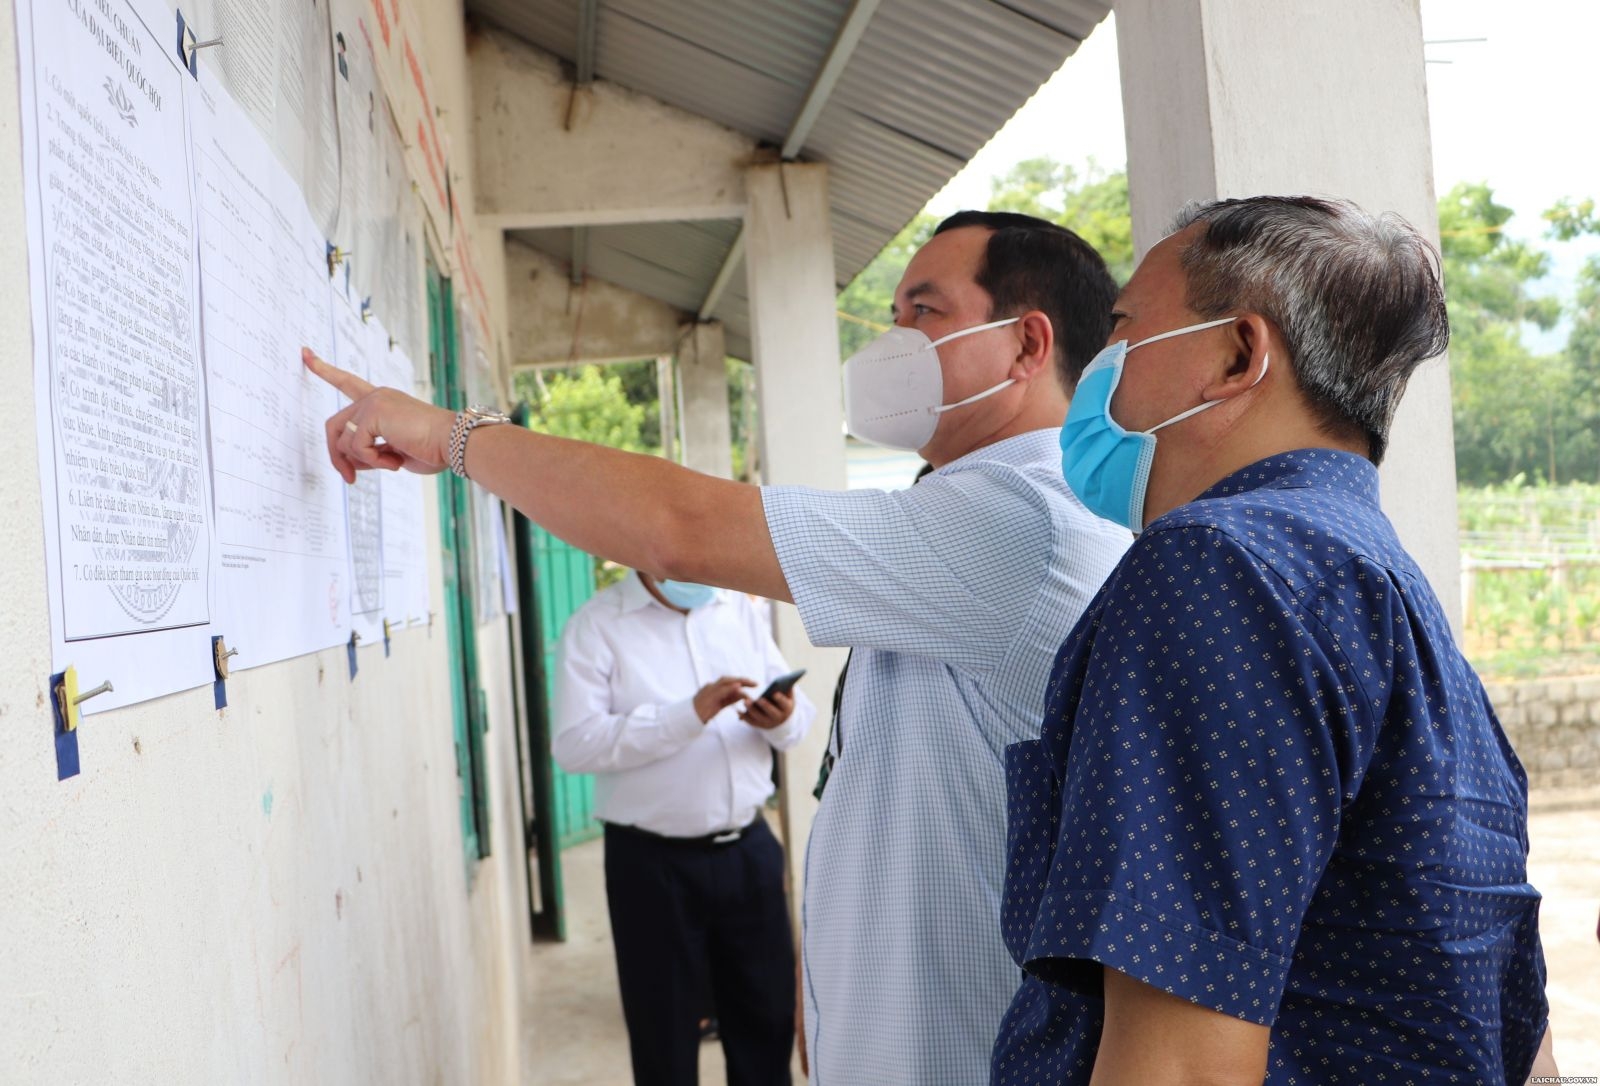 Chủ tịch Tổng LĐLĐ Việt Nam kiểm tra công tác chuẩn bị bầu cử tại Lai Châu